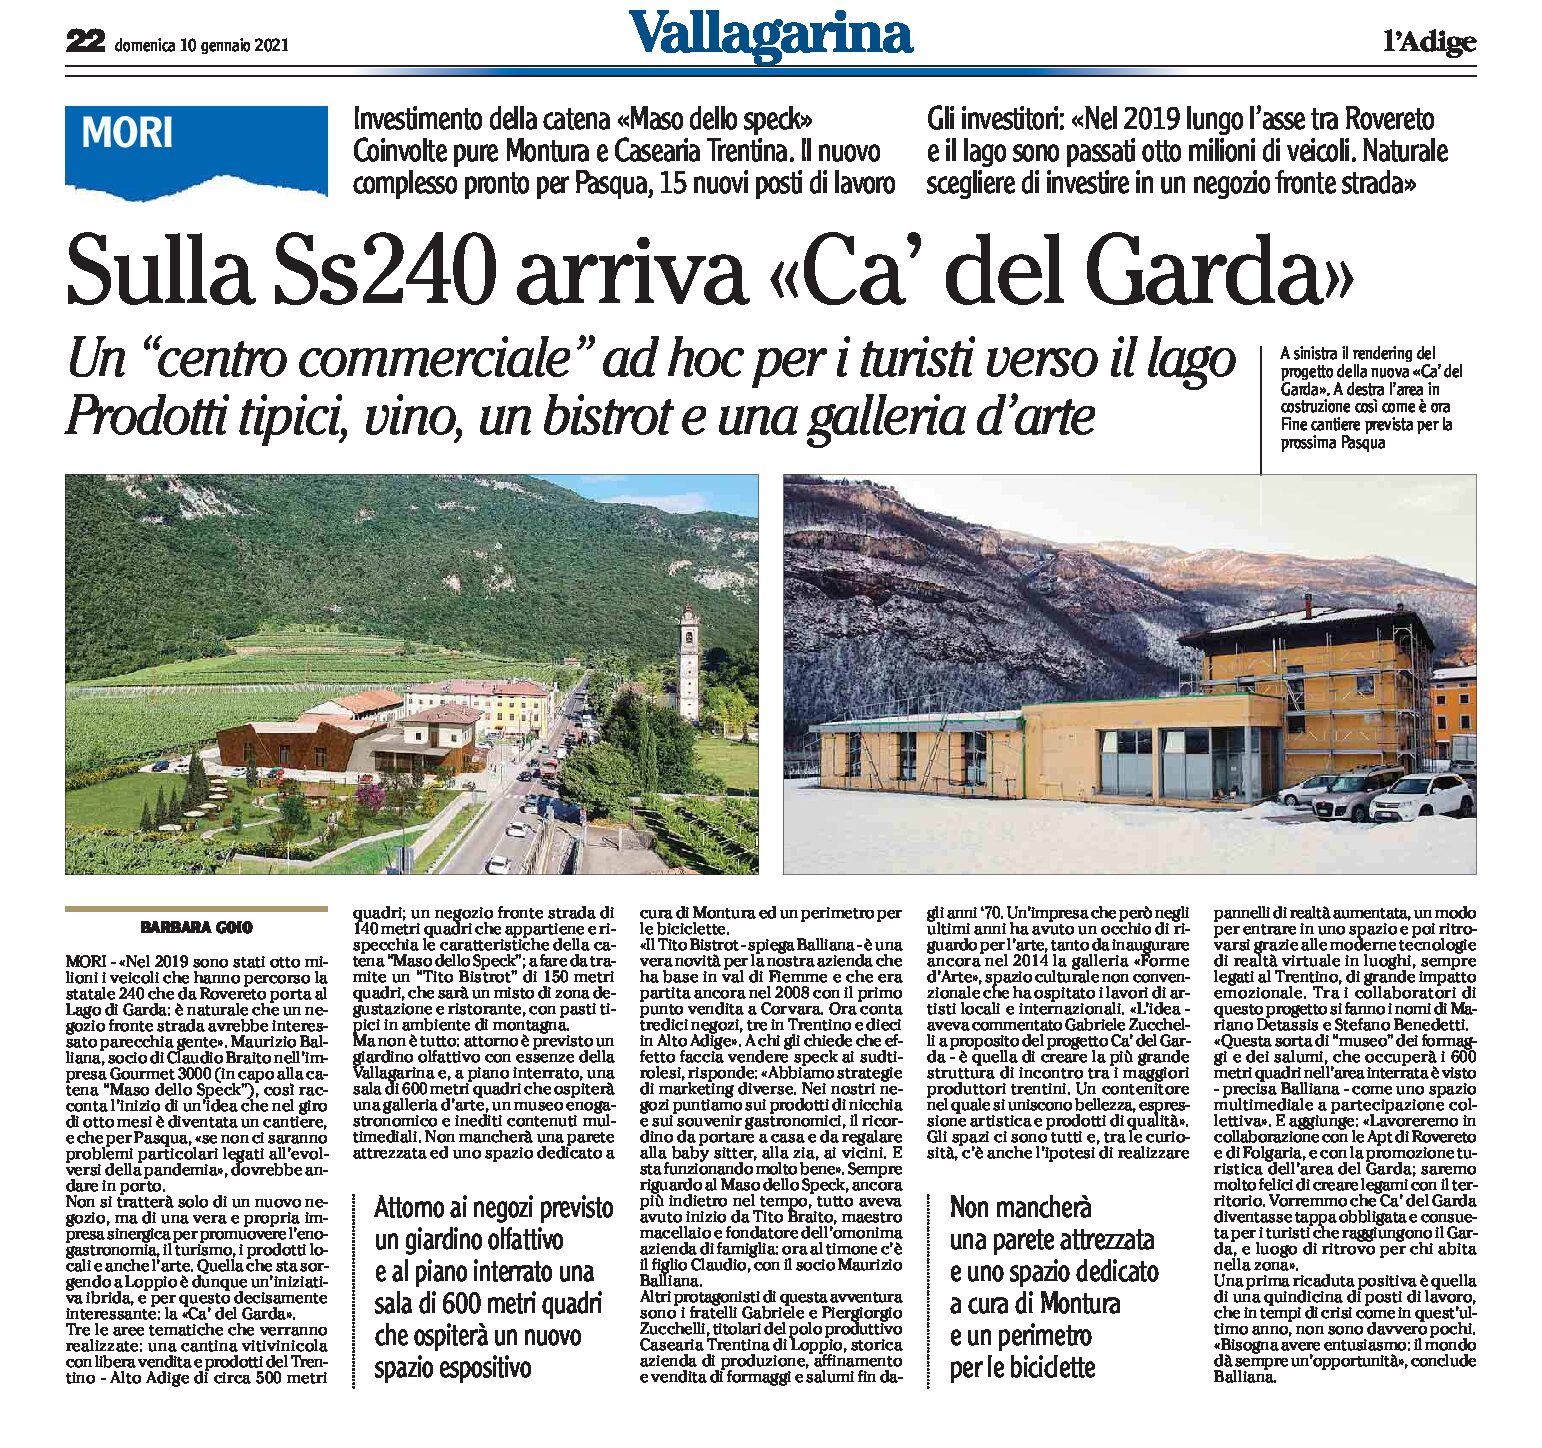 Mori: sulla Ss240 arriva “Ca’ del Garda”, un “centro commerciale” ad hoc per i turisti verso il lago